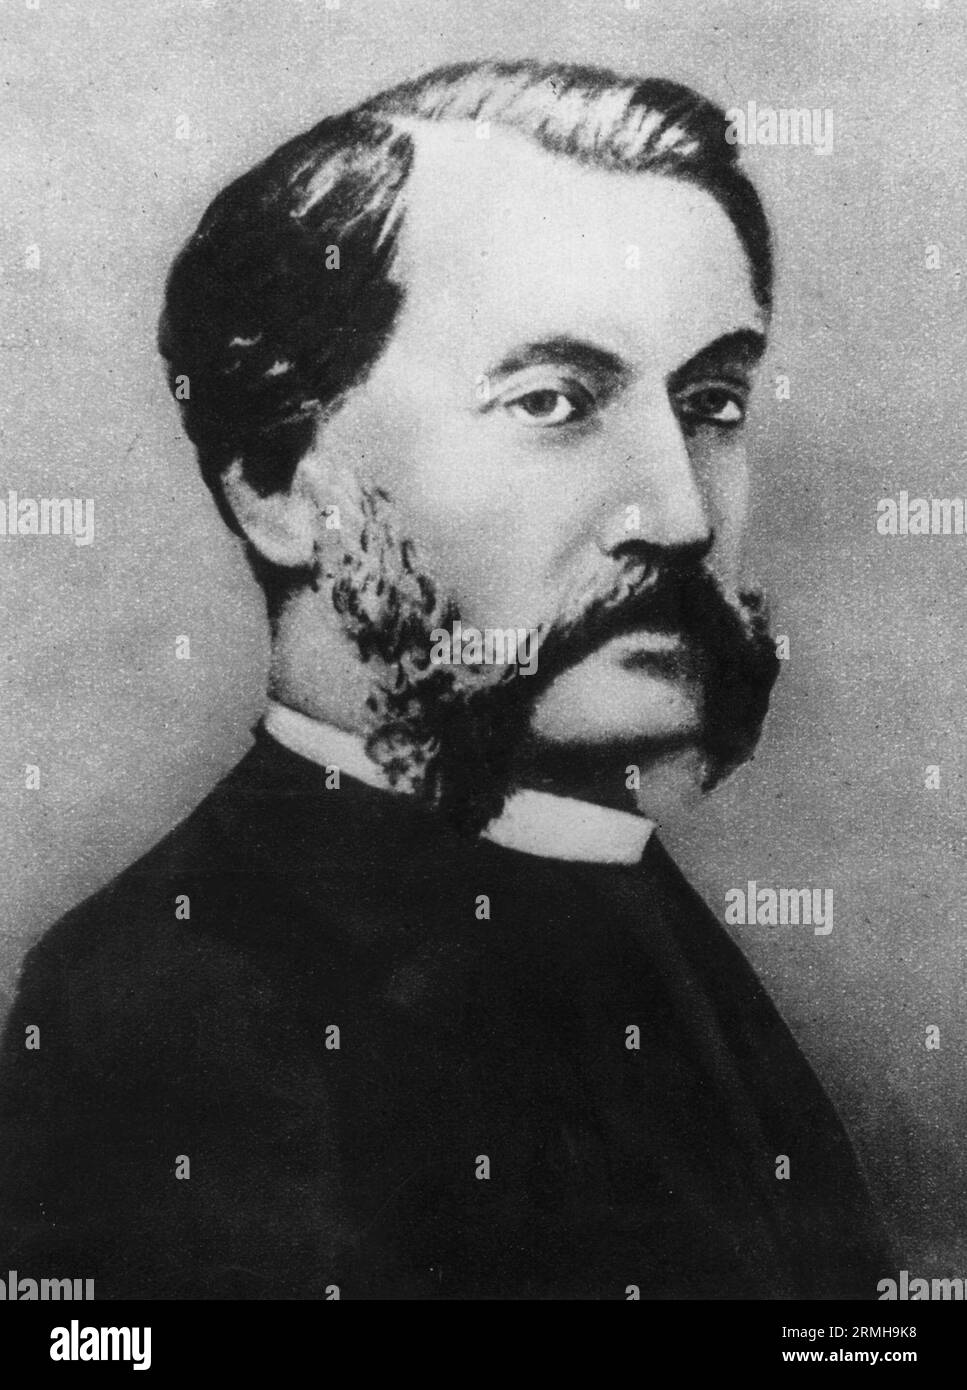 Louis Aimé Augustin Le Prince (1841 – am 16. September 1890 verschwand, am 16. September 1897 für tot erklärt), französischer Künstler und Erfinder einer frühen Filmkamera Stockfoto